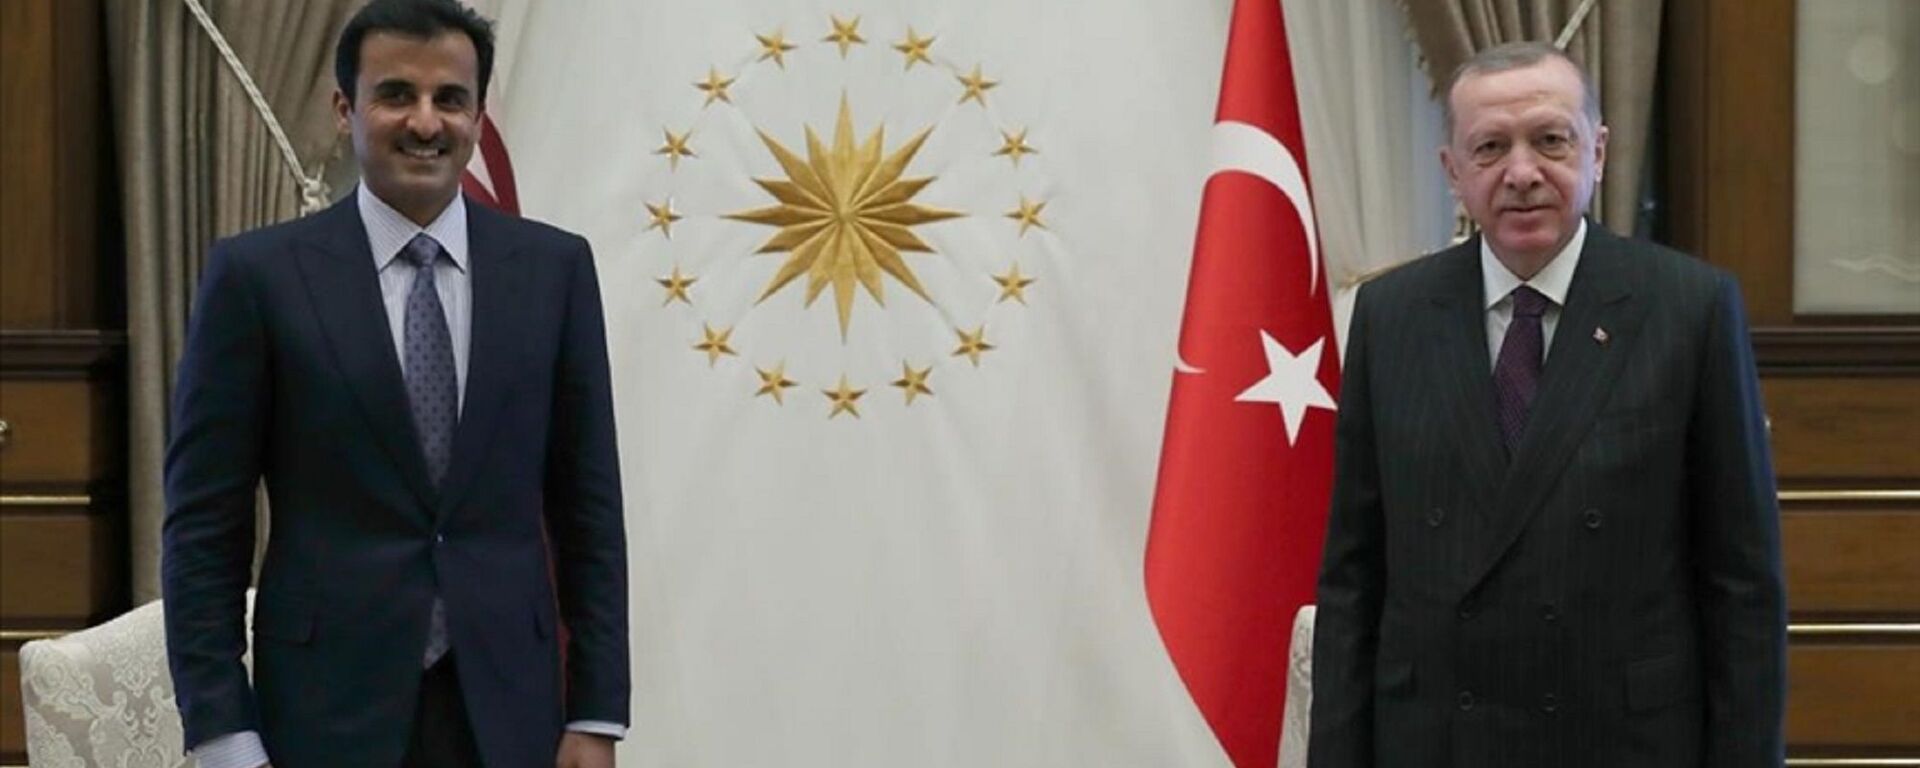 Cumhurbaşkanı Recep Tayyip Erdoğan ile Katar Emiri Şeyh Temim bin Hamed Al Sani  - Sputnik Türkiye, 1920, 13.05.2022